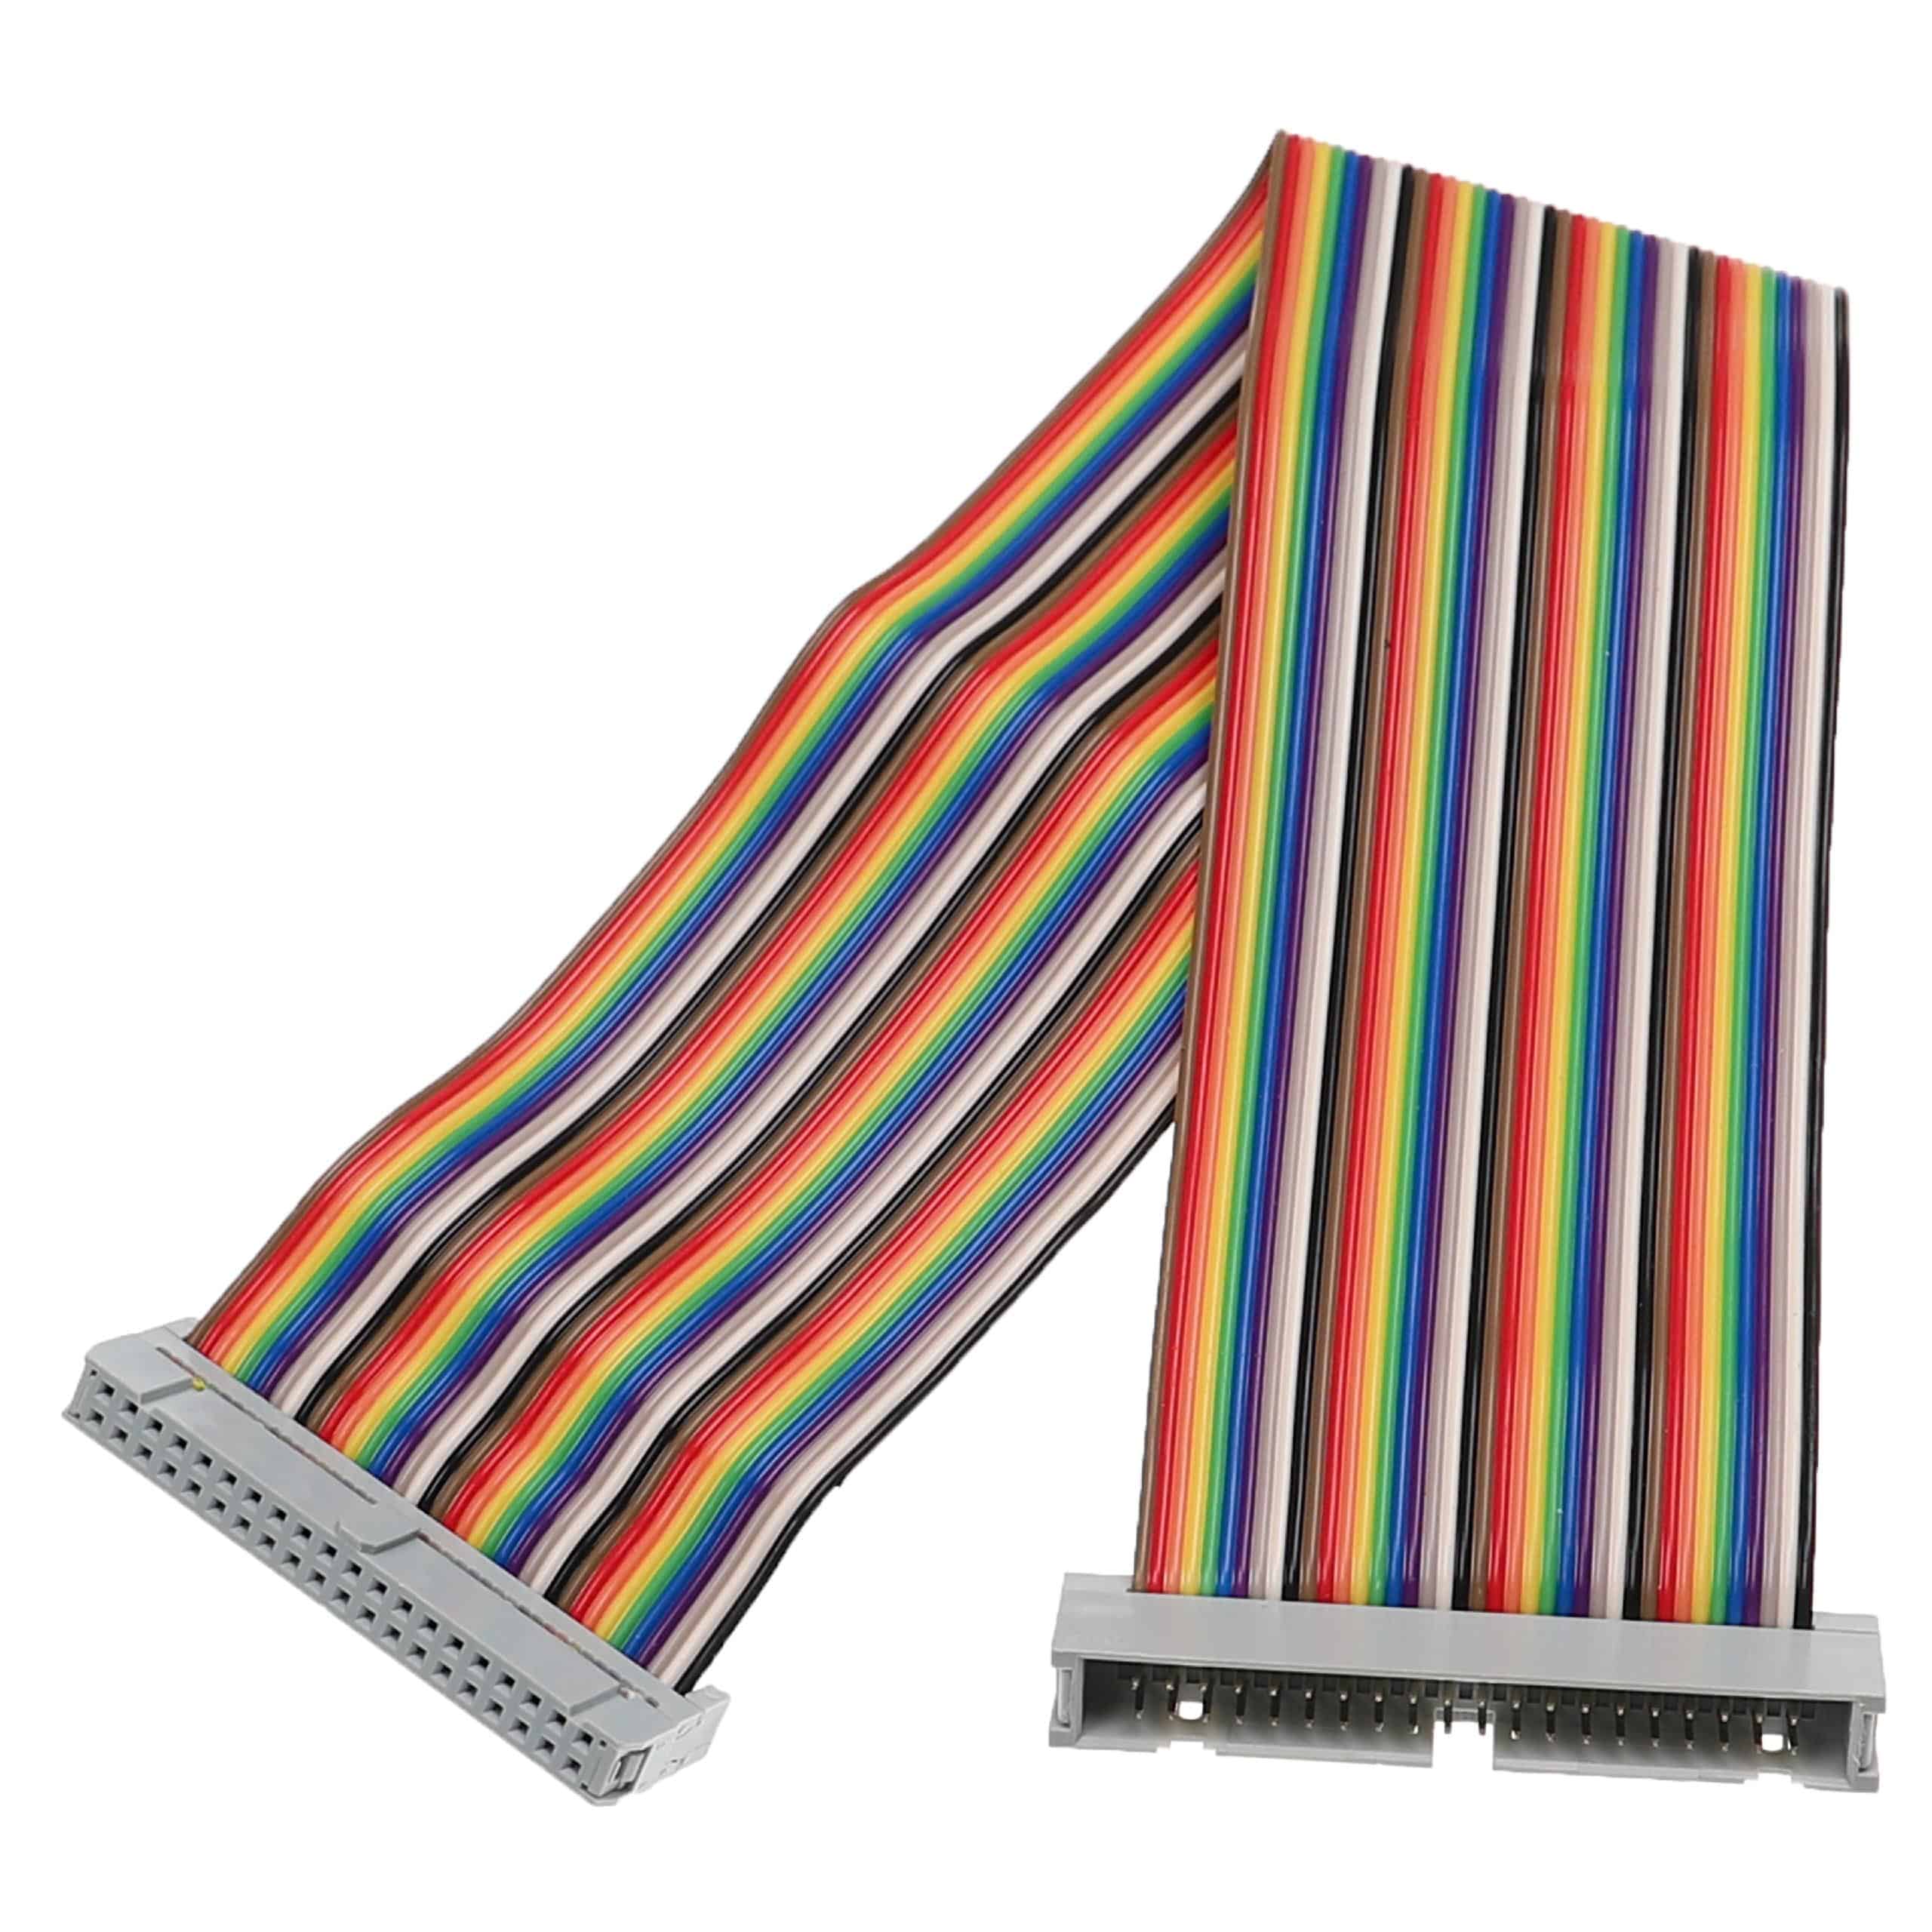 Cable GPIO 40 pines compatible con Raspberry Pi miniordenador - Cable alargador GPIO multicolor, 30 cm